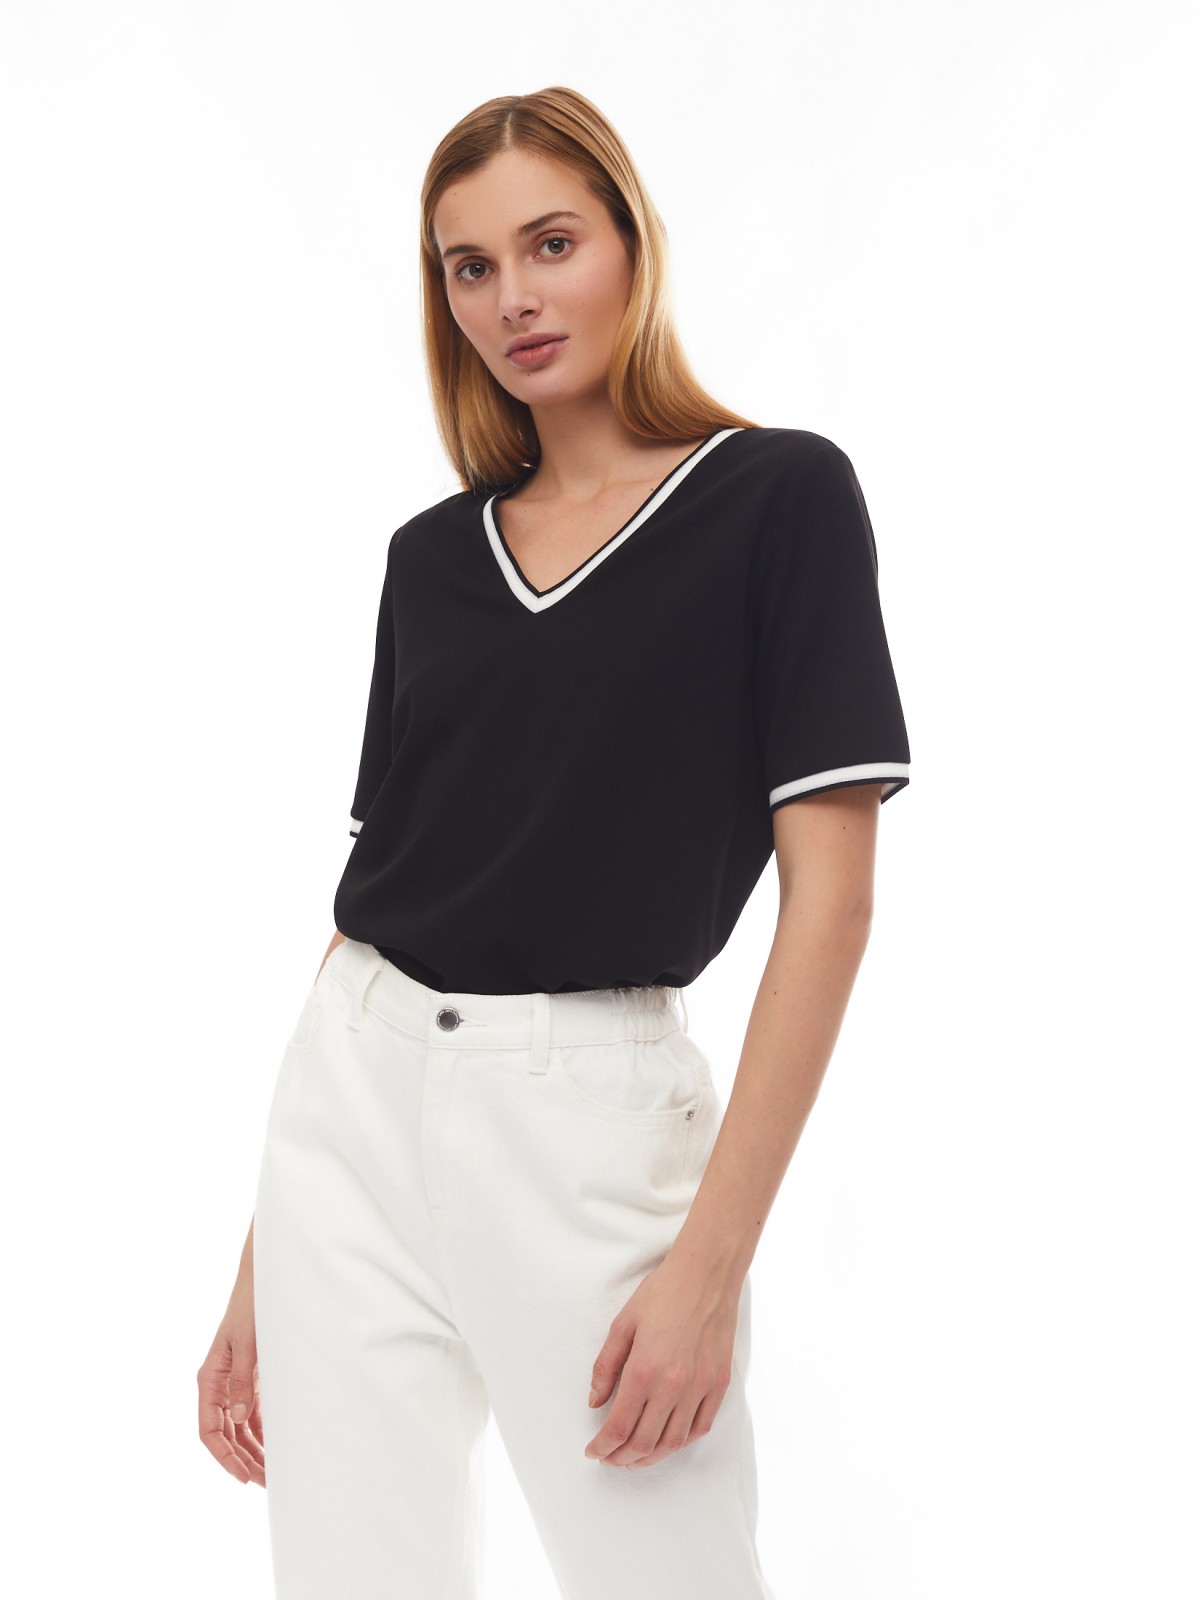 Блузка-футболка с V-образным вырезом zolla 02413322L033, цвет черный, размер S